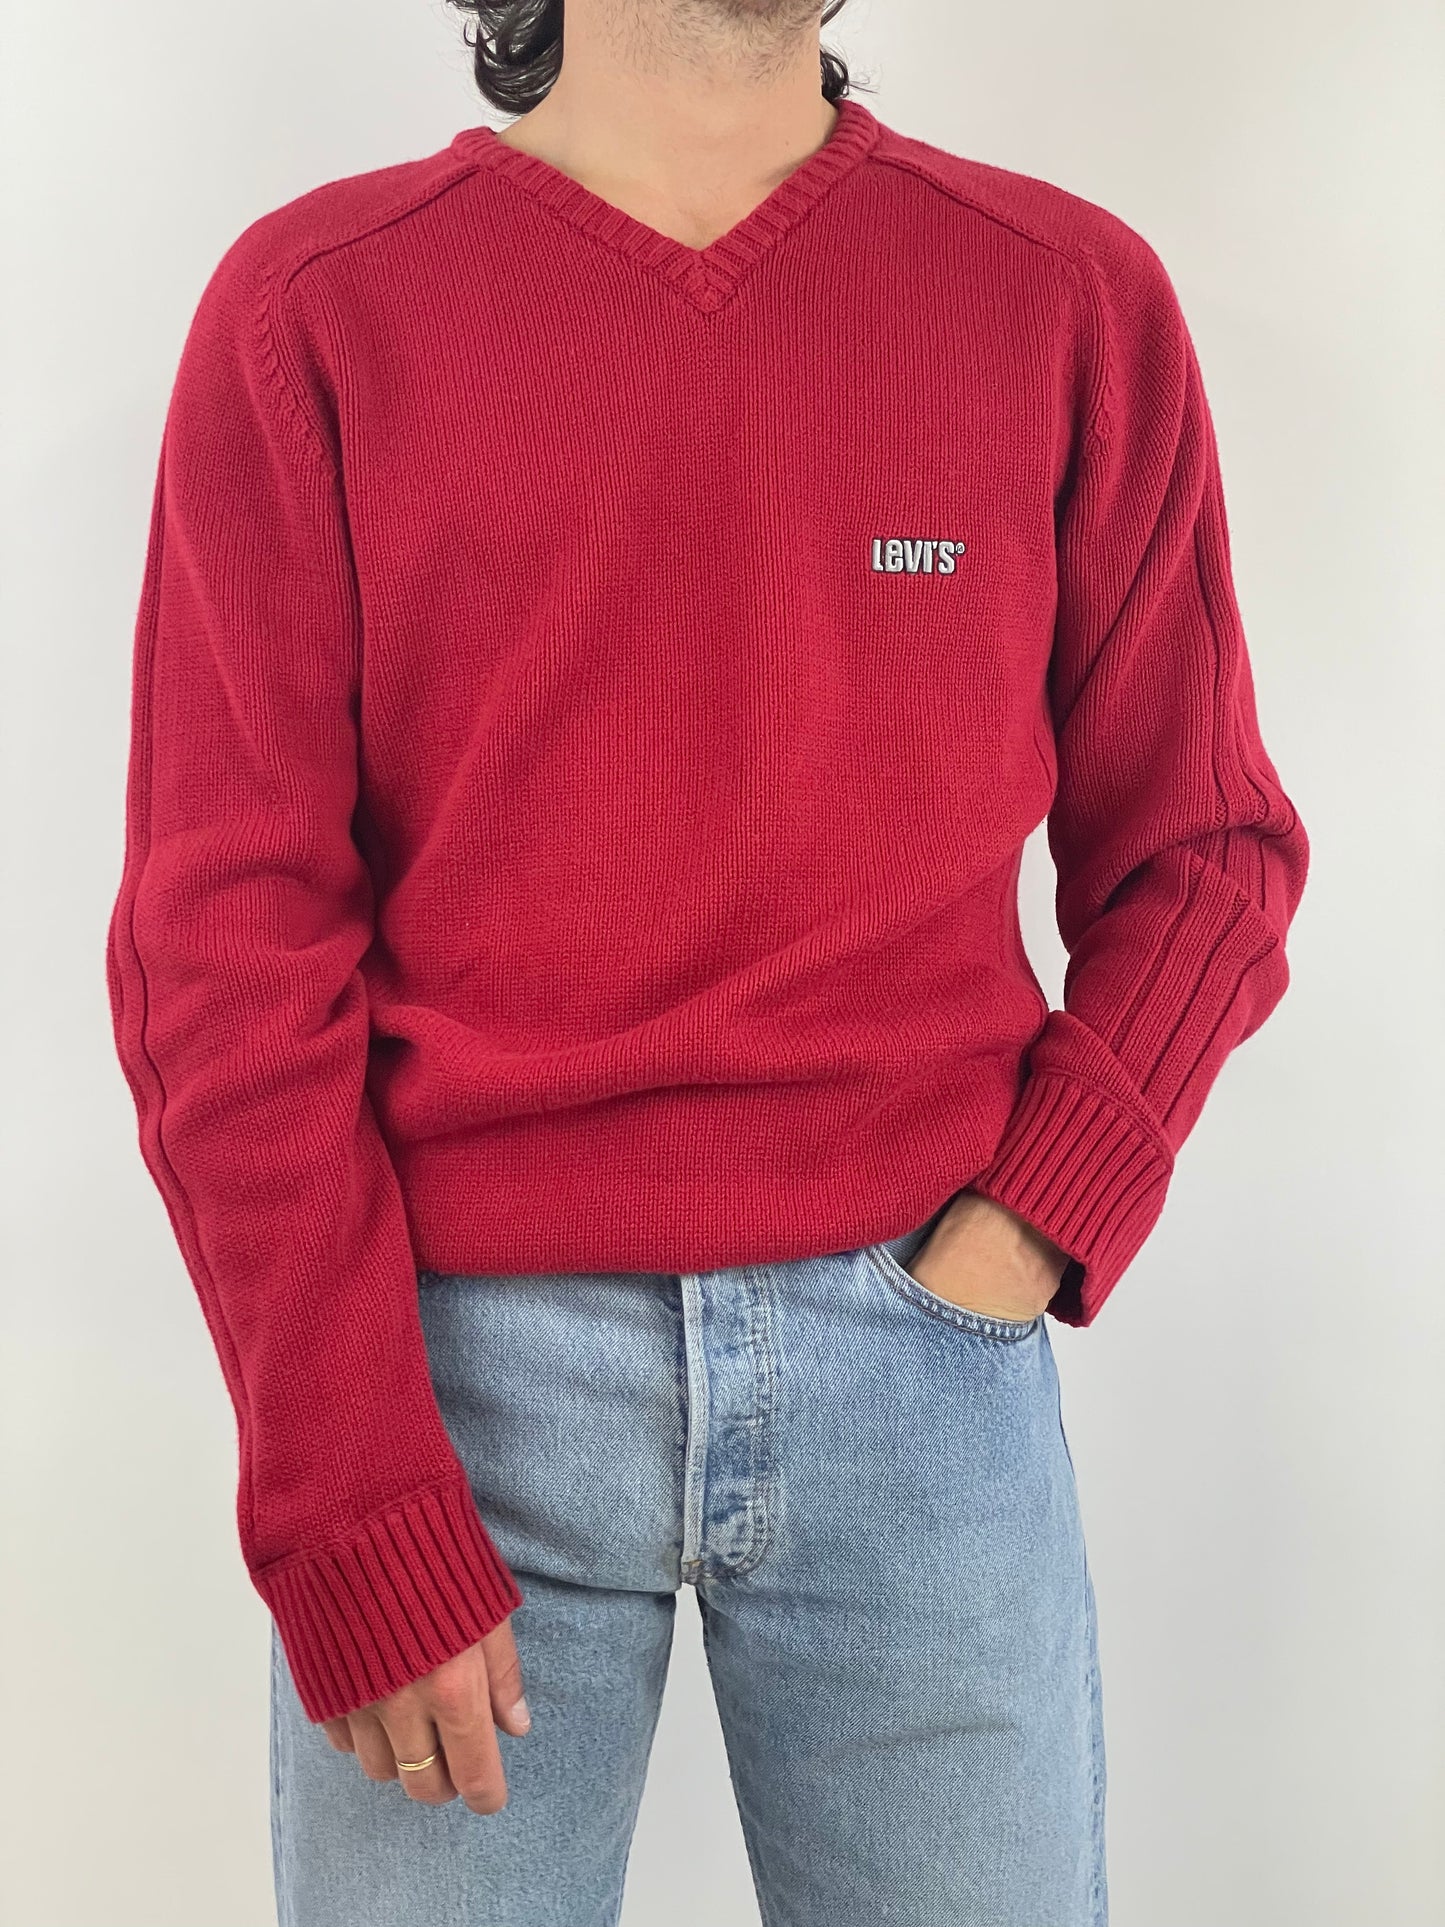 maglione-levis-scollo-a-v-colore-rosso